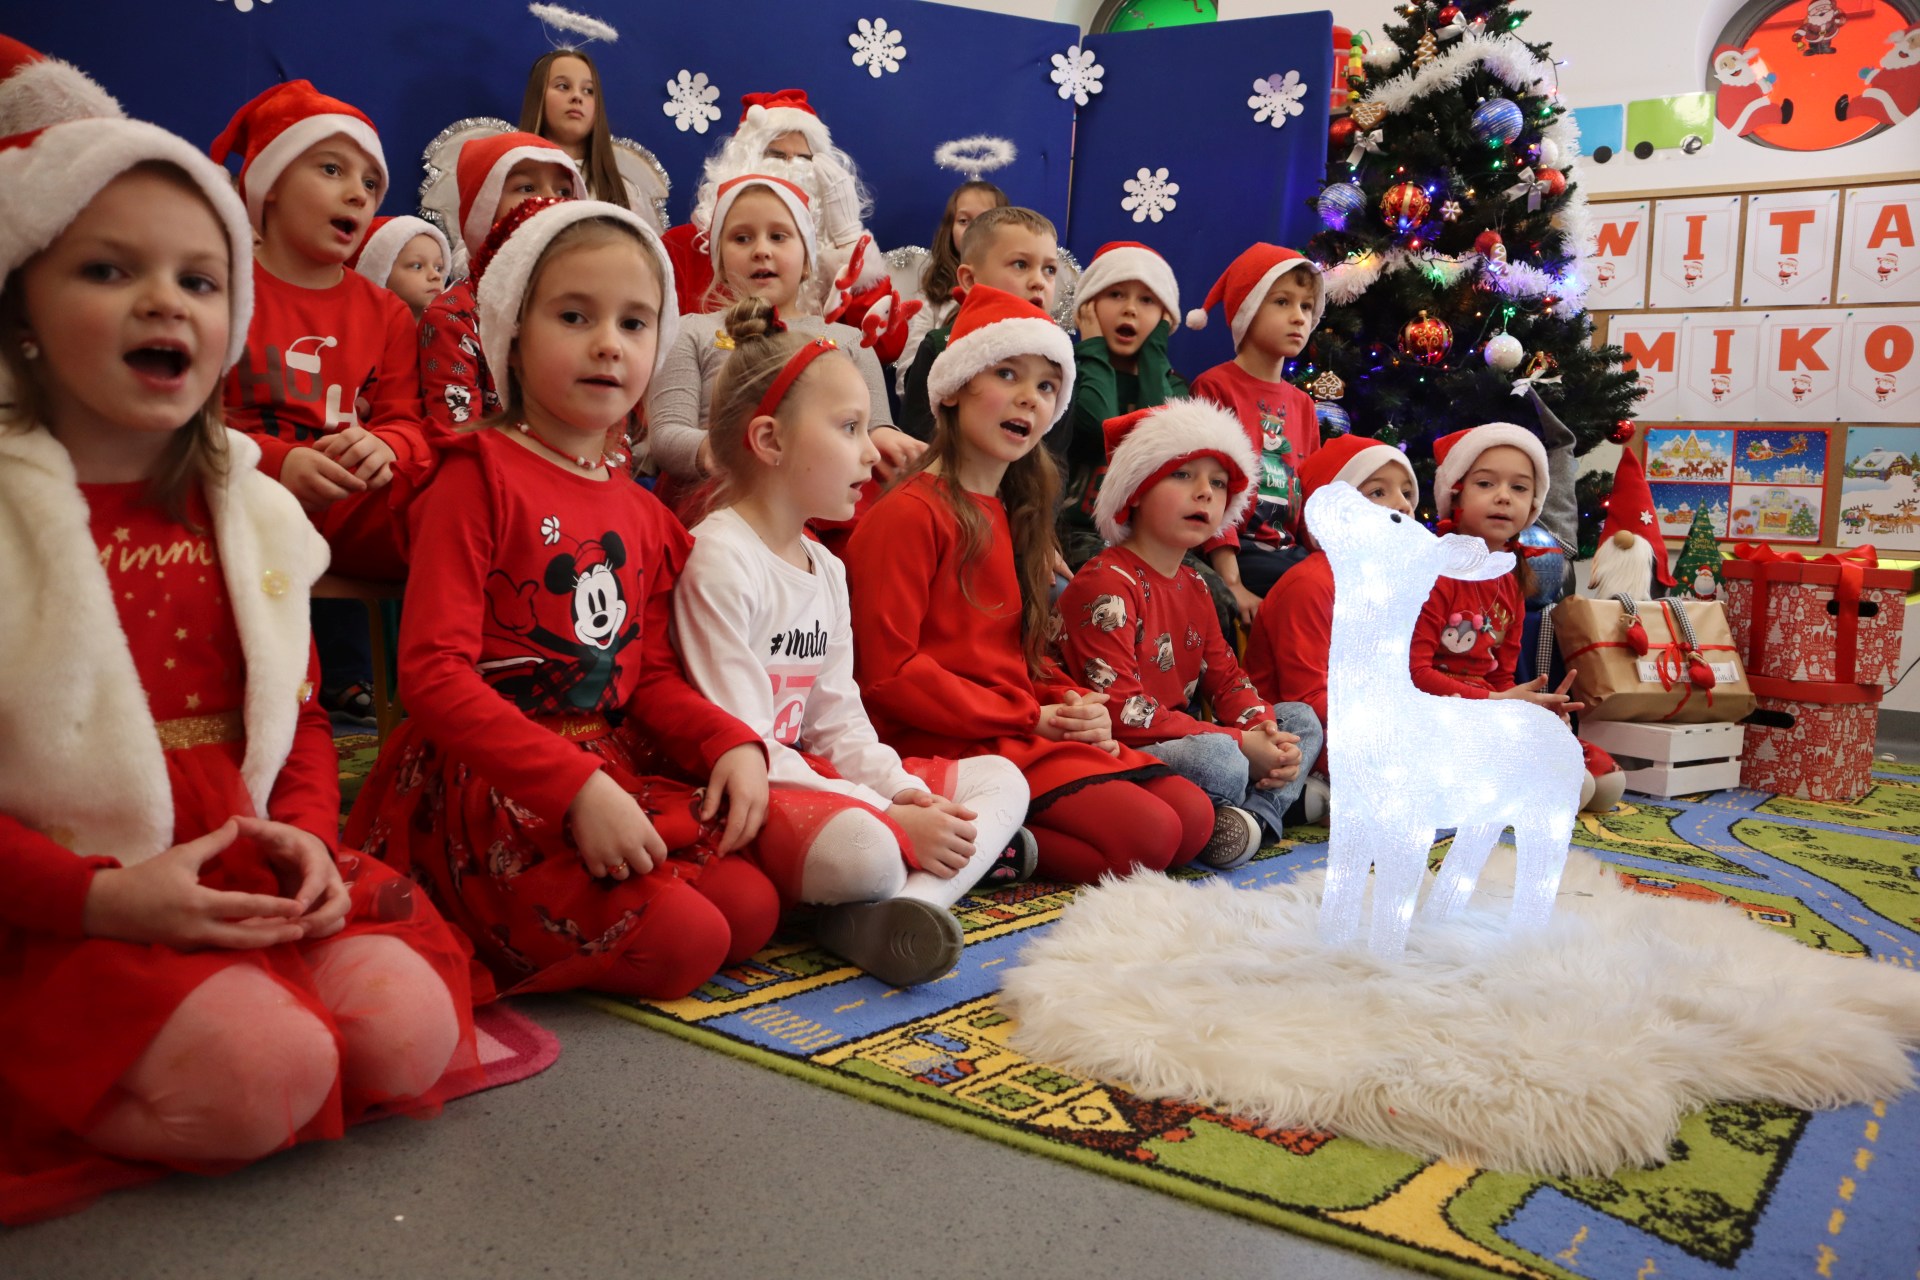 Dzieci ubrane w czerwone stroje siedzą w czasie spotkania ze Świętym Mikołajem wokół podświetlanehgo reniferka.